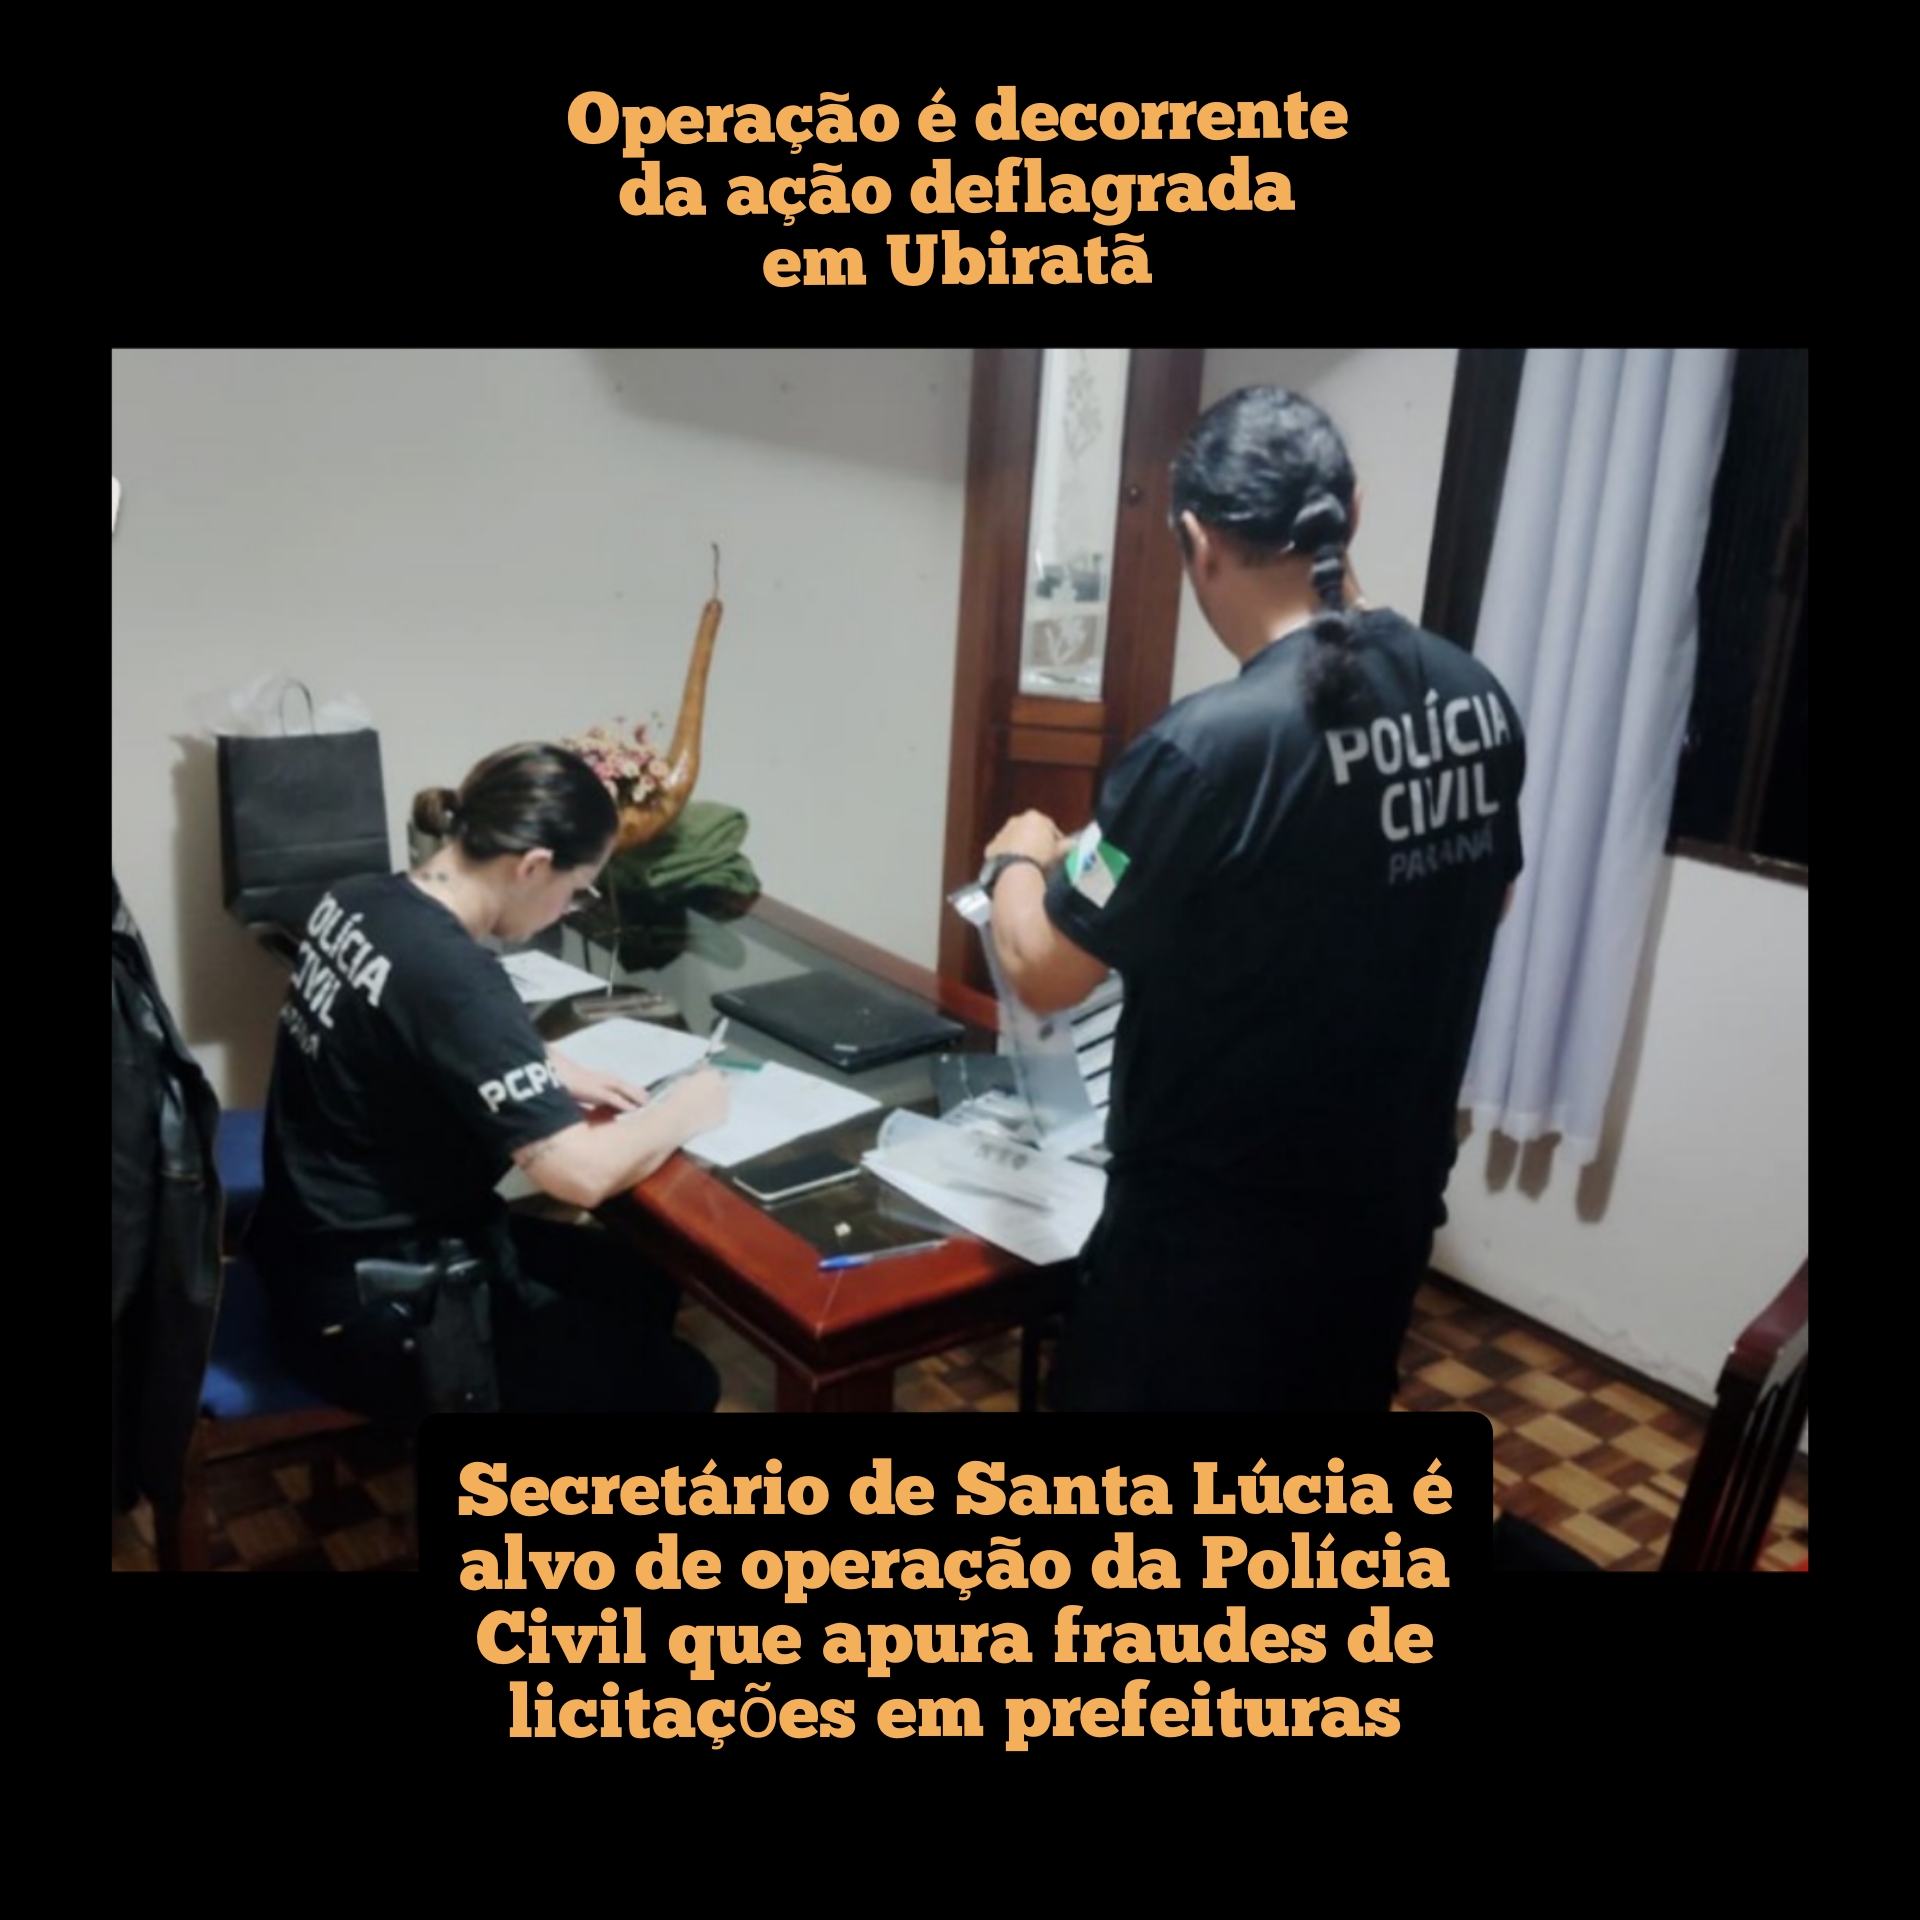 Secretário de Santa Lúcia é alvo de operação da Polícia Civil que apura fraudes de licitações em prefeituras; Operação é decorrente da ação deflagrada em Ubiratã